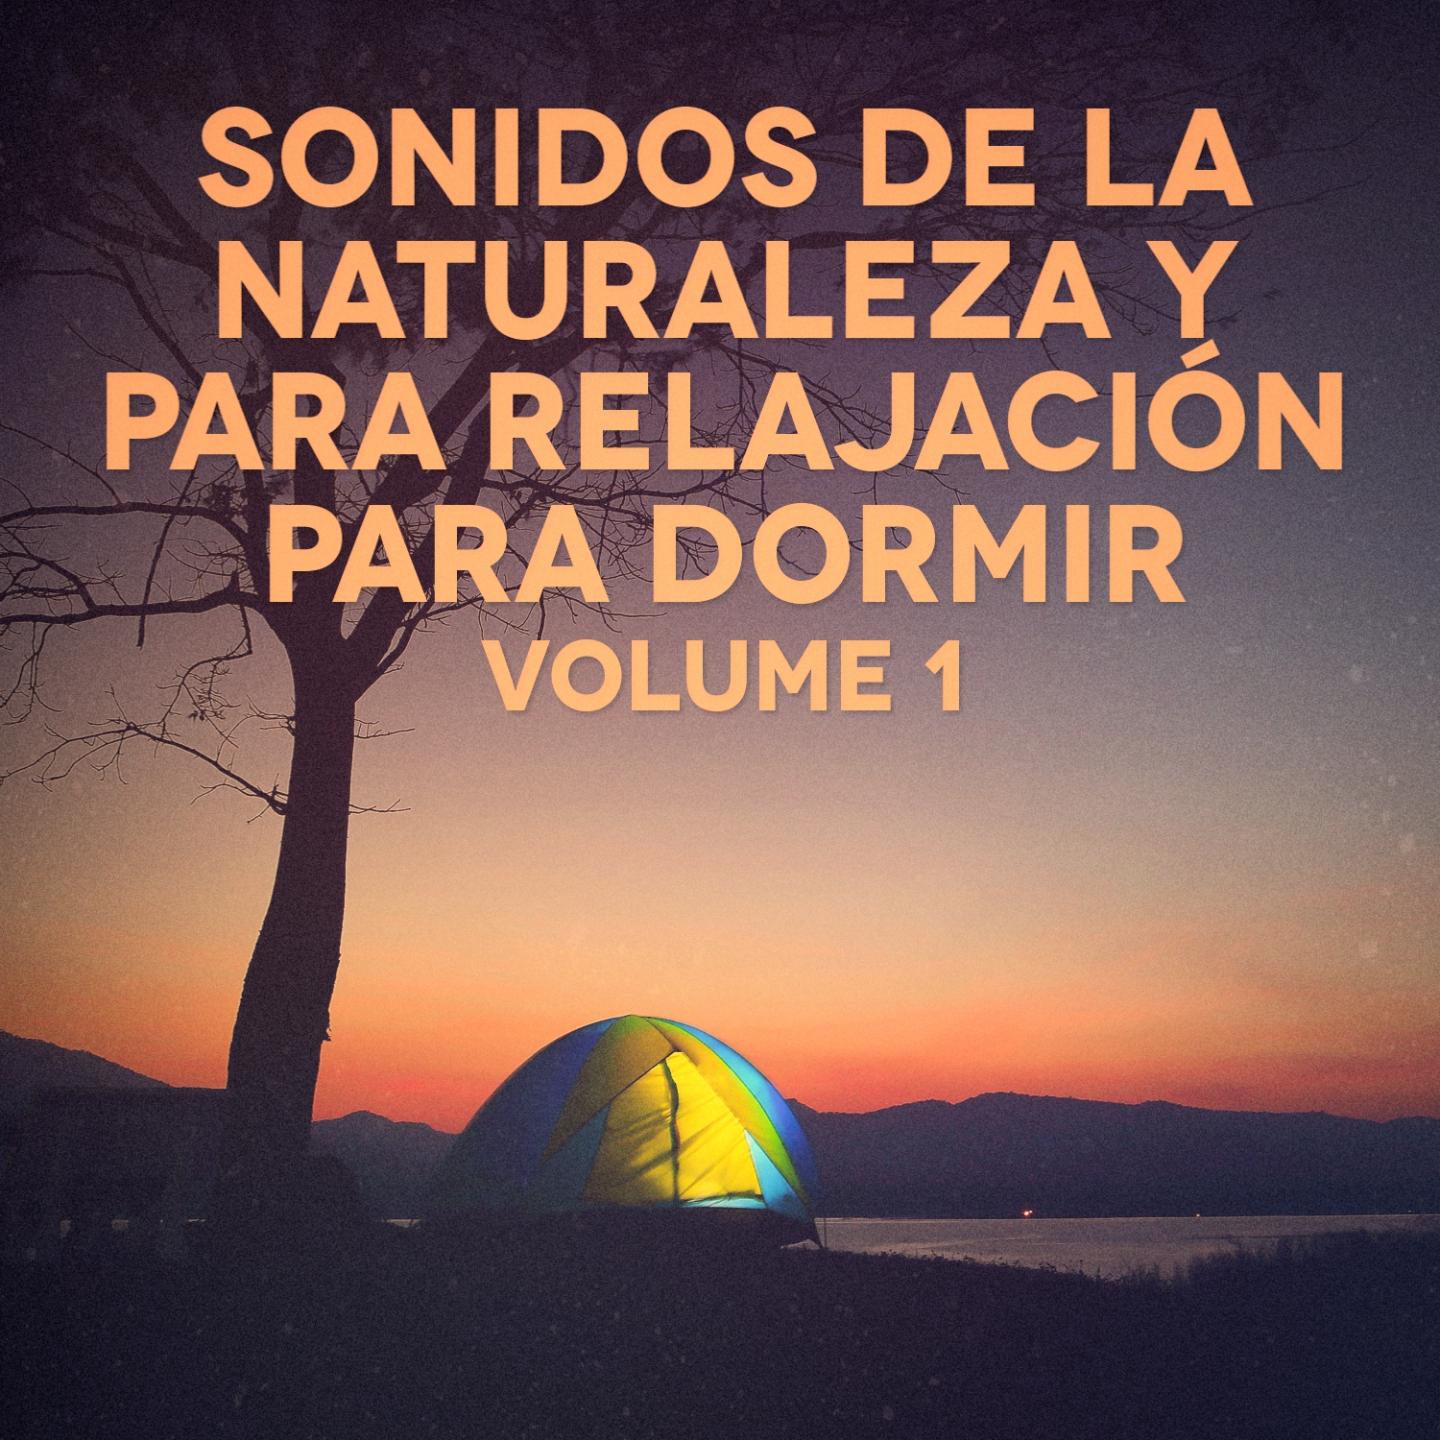 Sonidos Nocturnos de Tierra Desolada 1: Grillos, Saltamontes y Bu hos